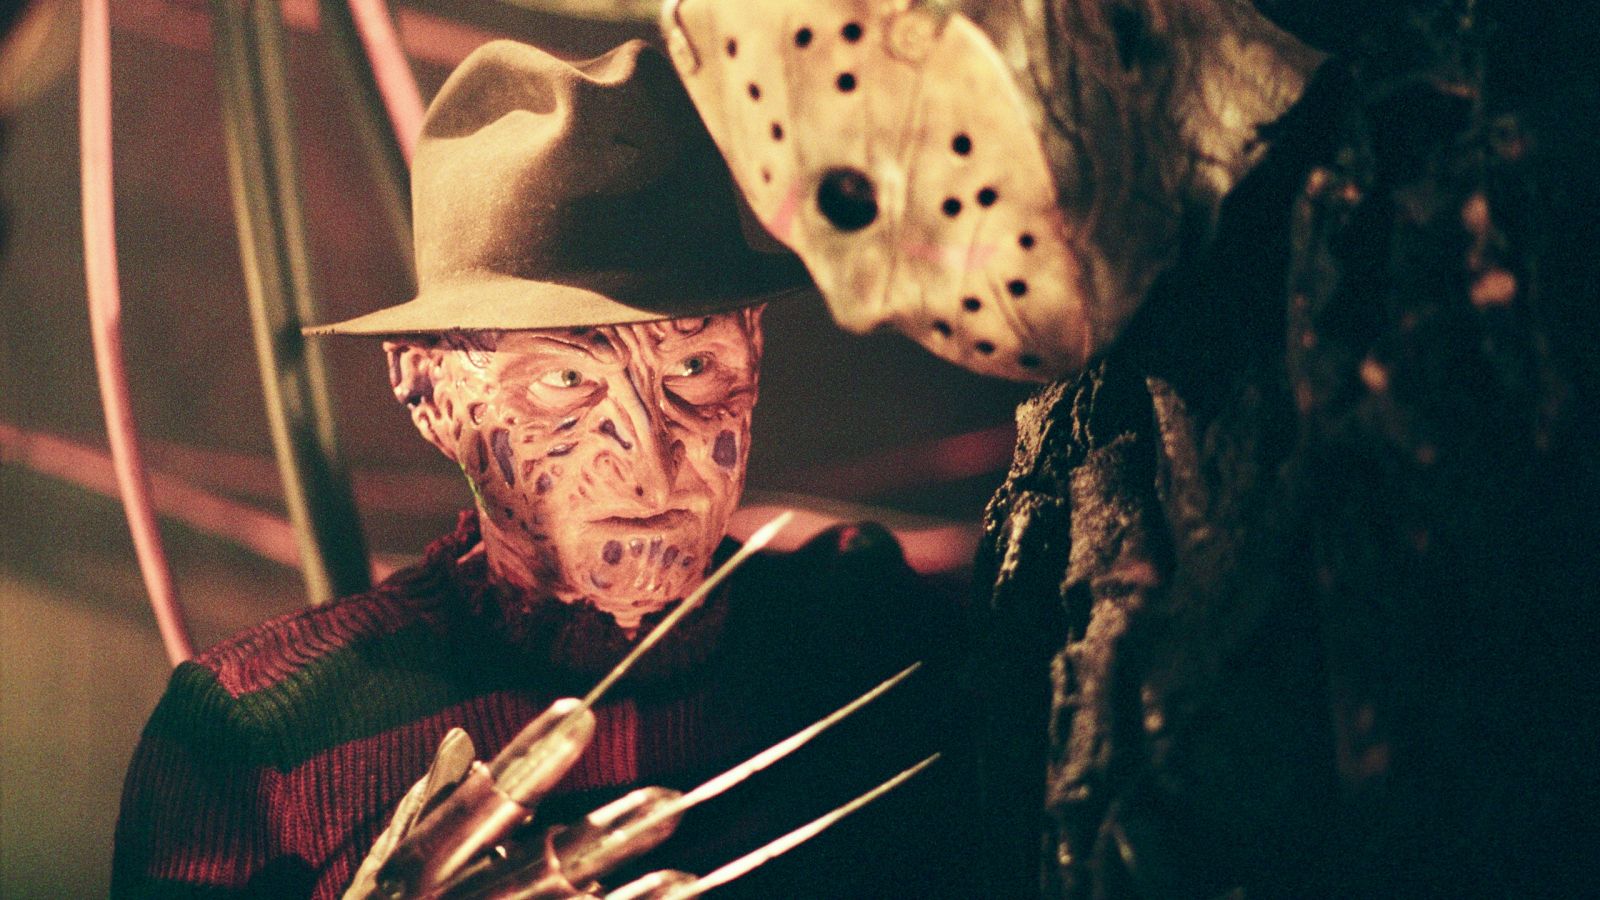 Cena do filme: Freddy vs Jason de 2003